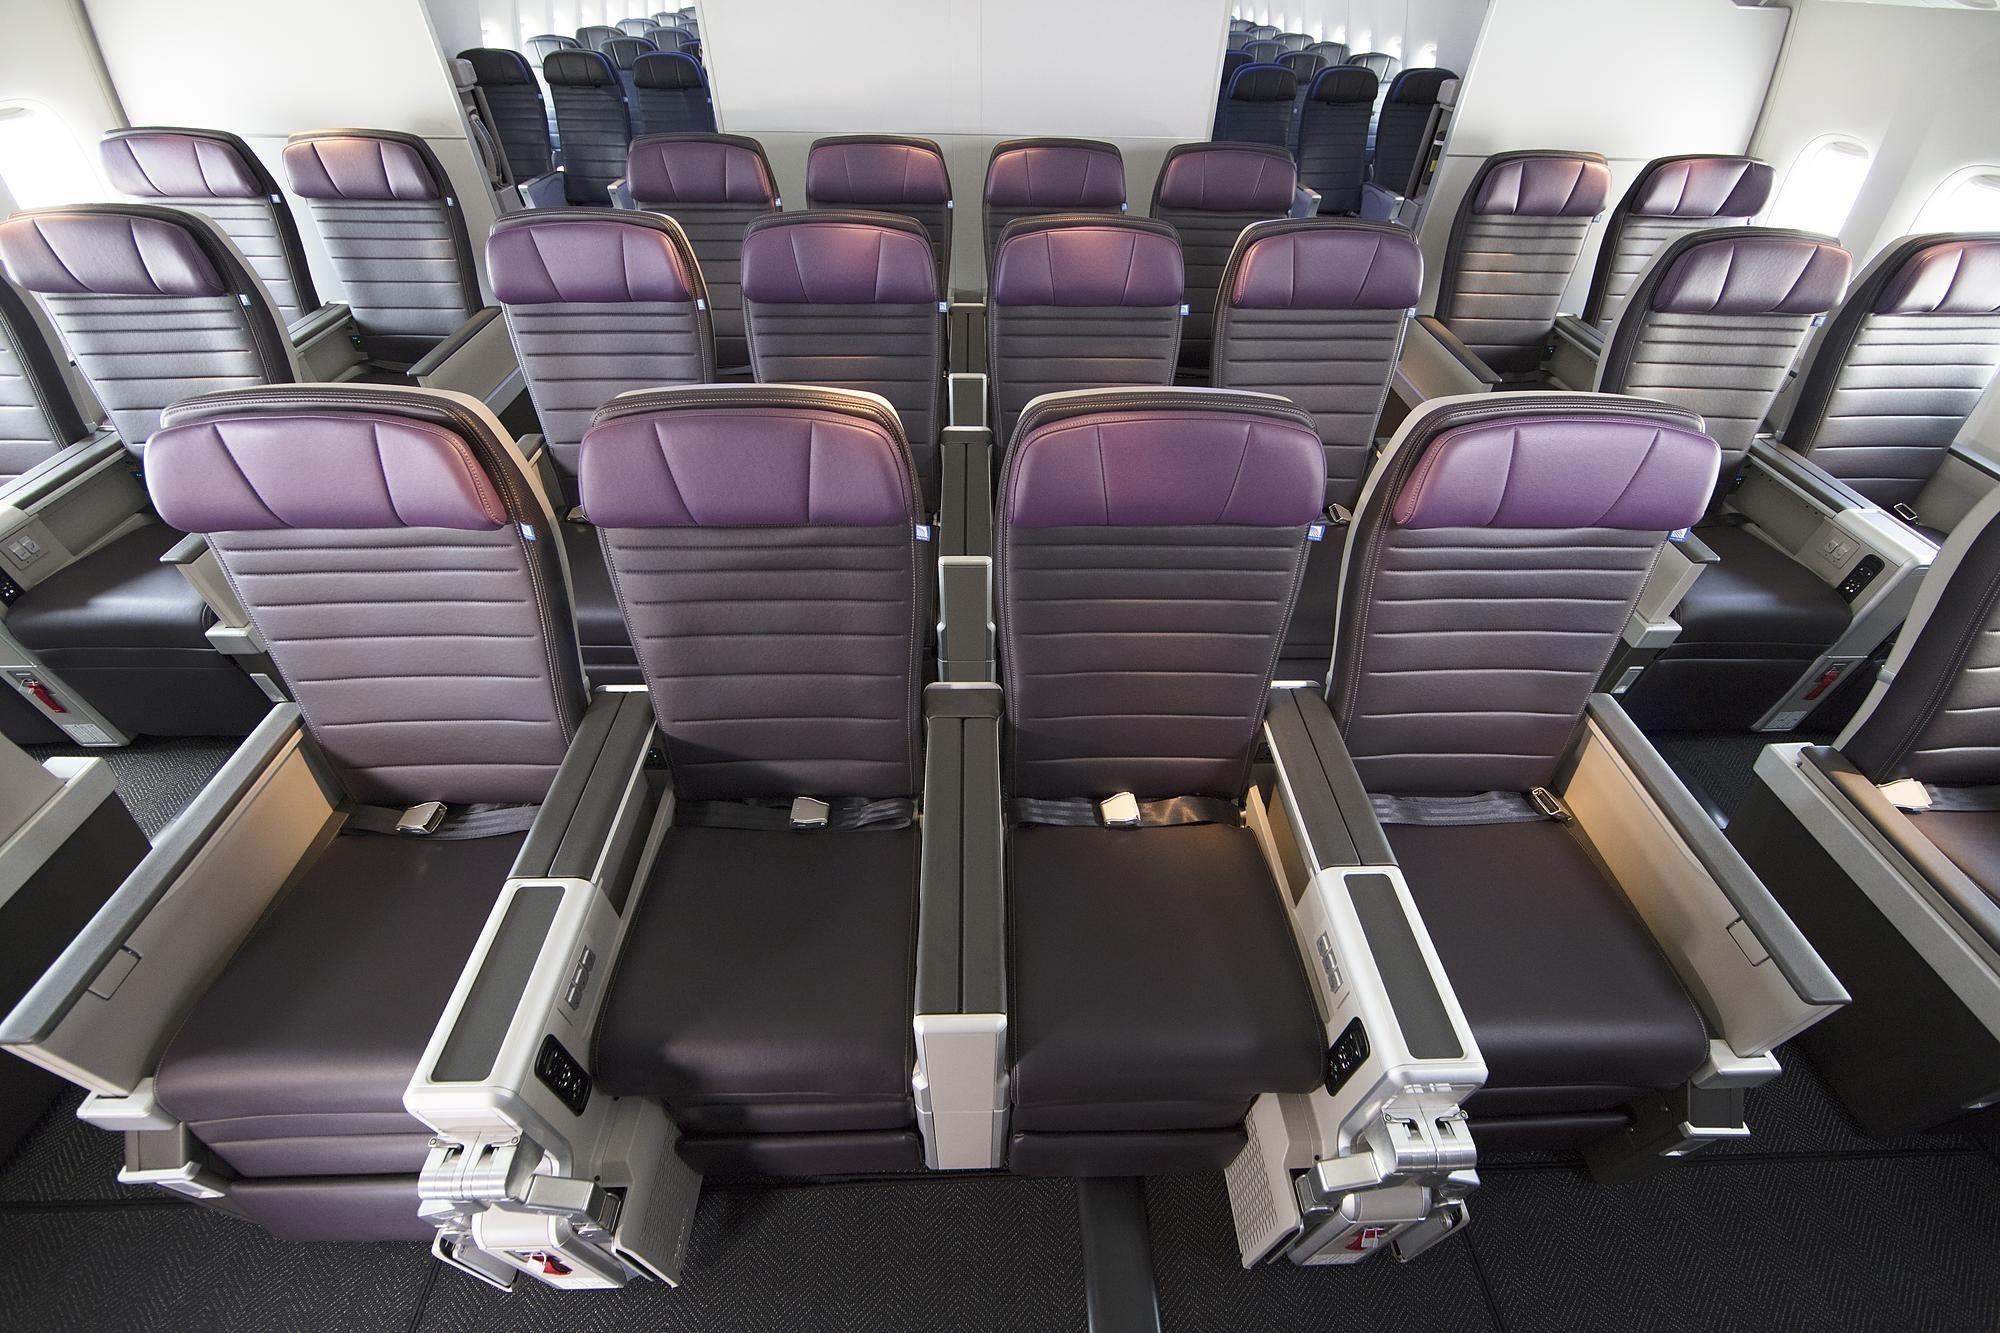 United Airlines premium plus seats